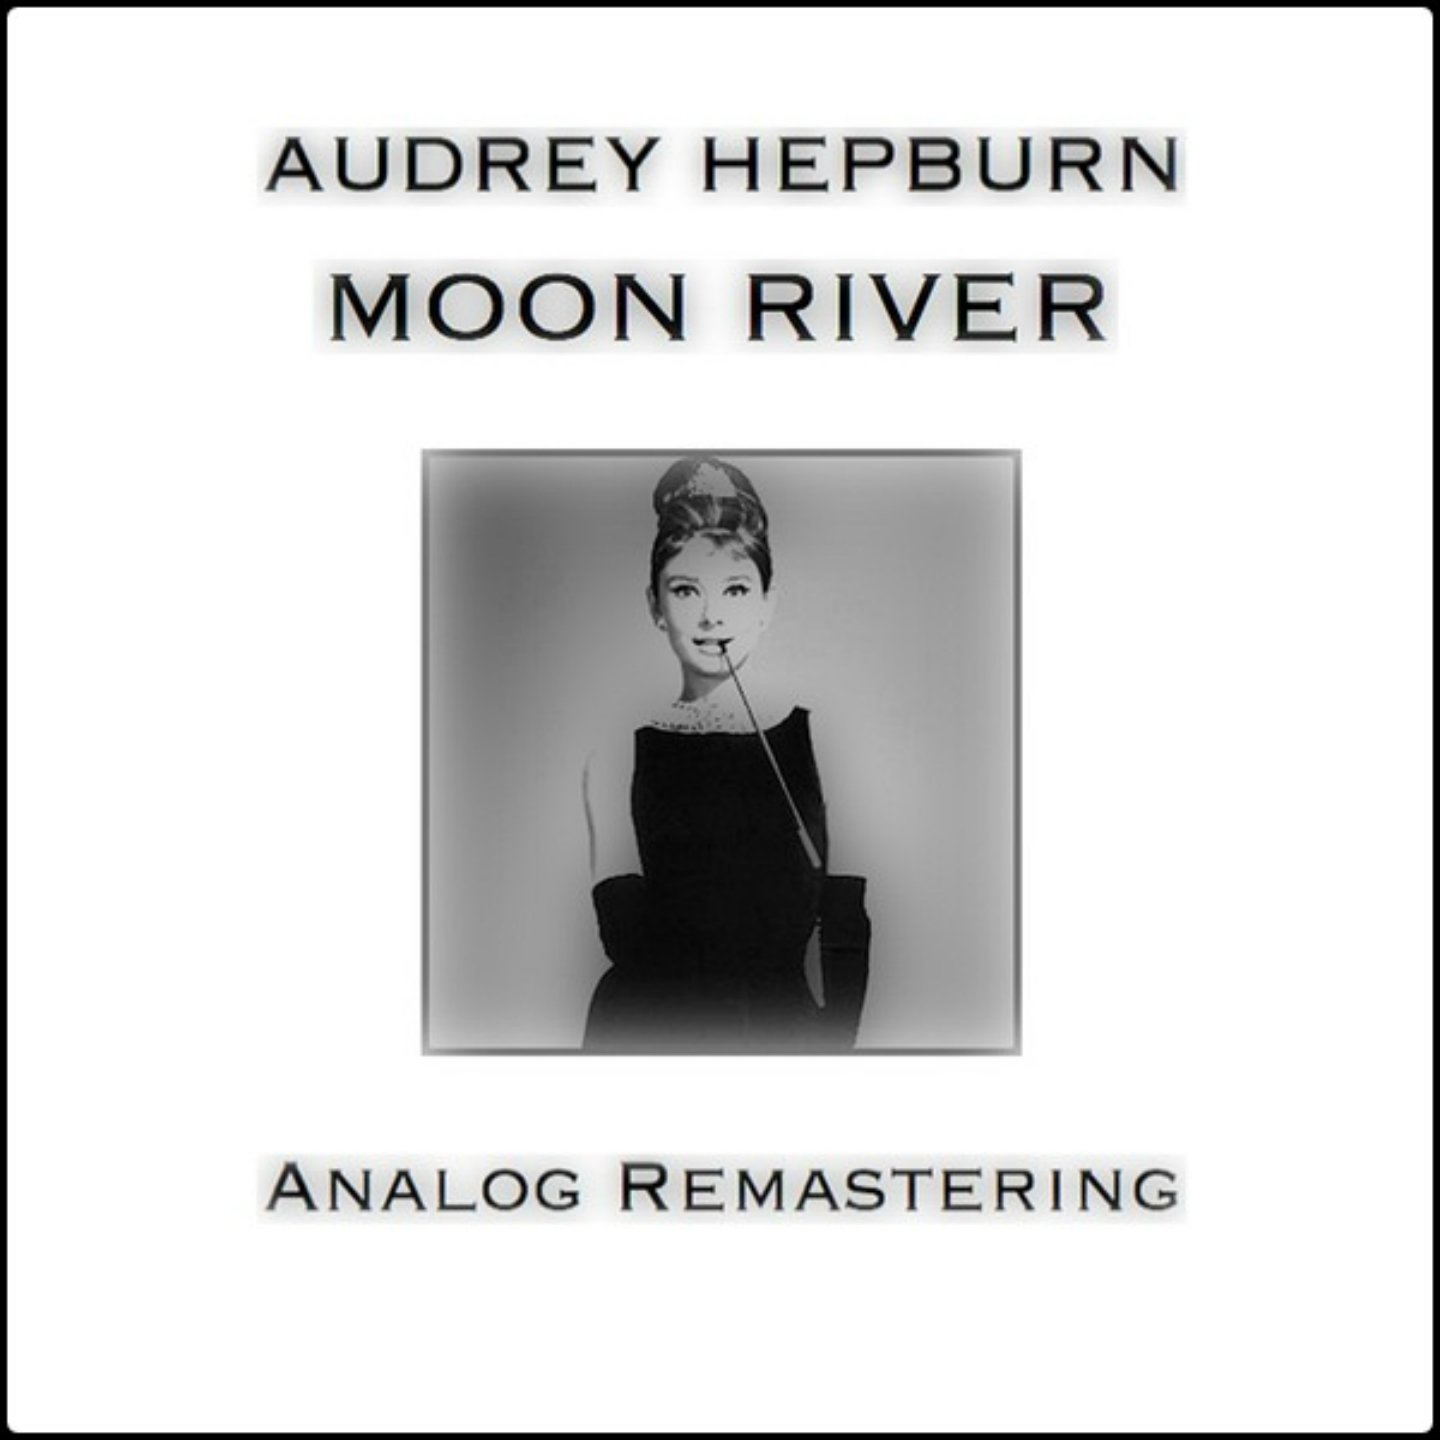 Одри Хепберн Мун Ривер. Лунная река Одри Хепберн. Audrey Hepburn - Moon River альбом. Одри Хепберн Moon River Lyrics. Нужен мун